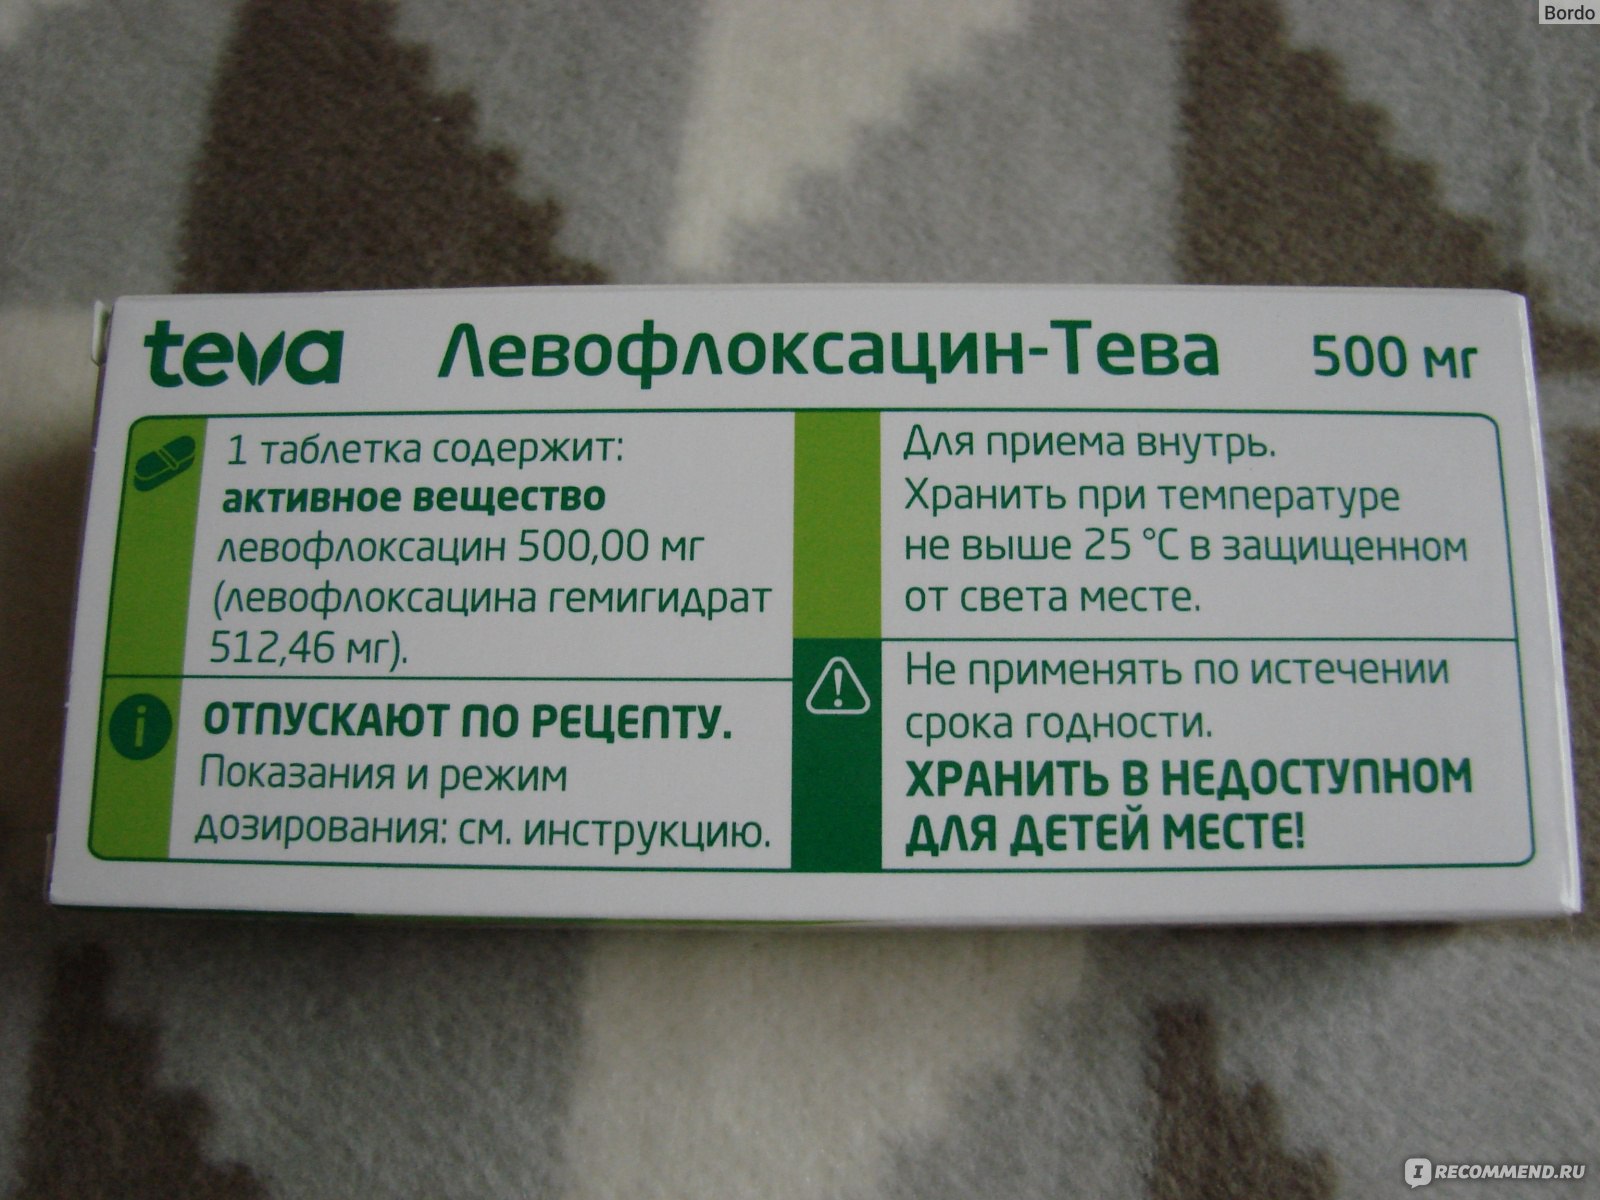 Антибиотик Левофлоксацин-Тева - «Антибиотик широкого спектра Teva .